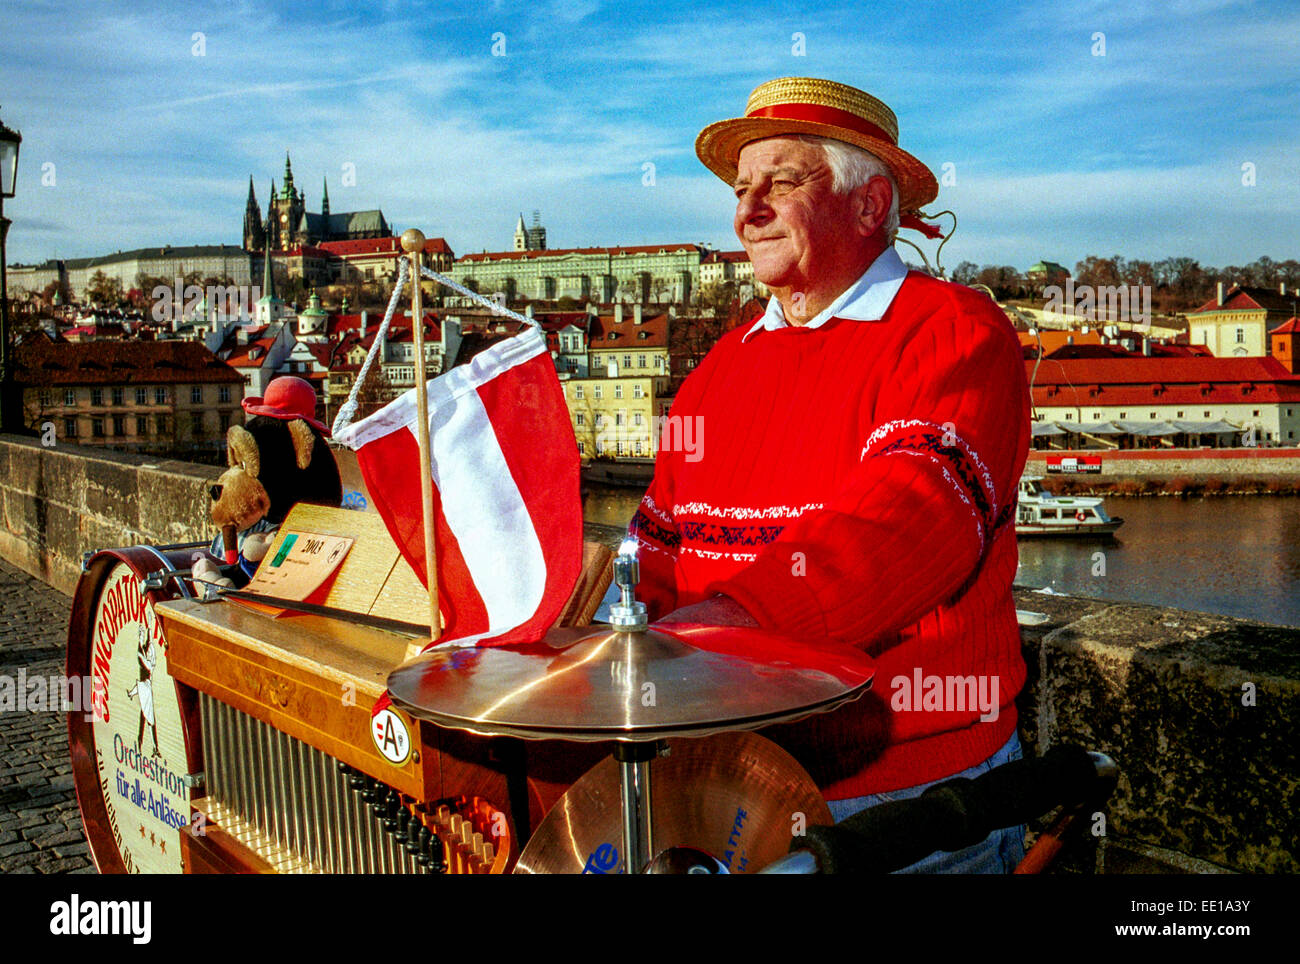 Musician play on a barrel organ, Charles Bridge Prague Castle Czech Republic Europe busker street performer Stock Photo